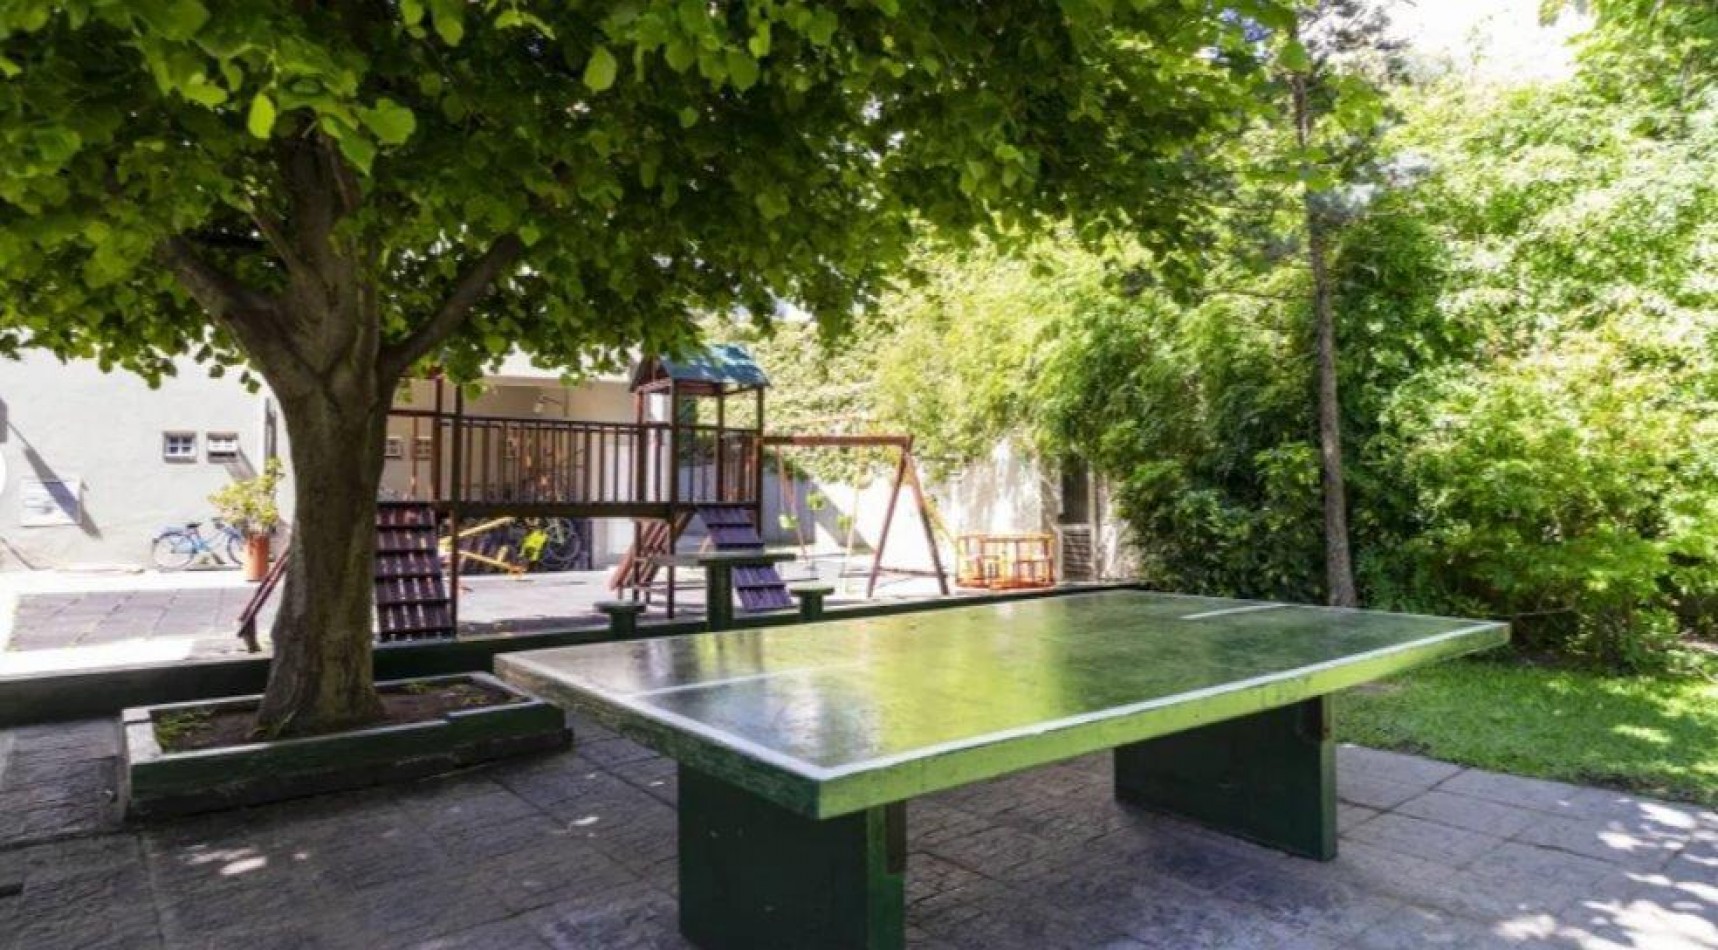 Sanchez de Loria y Moreno - ALMAGRO  2 ambientes con amenities- piscina, amplio jardin, cancha paddle. seg 24hs